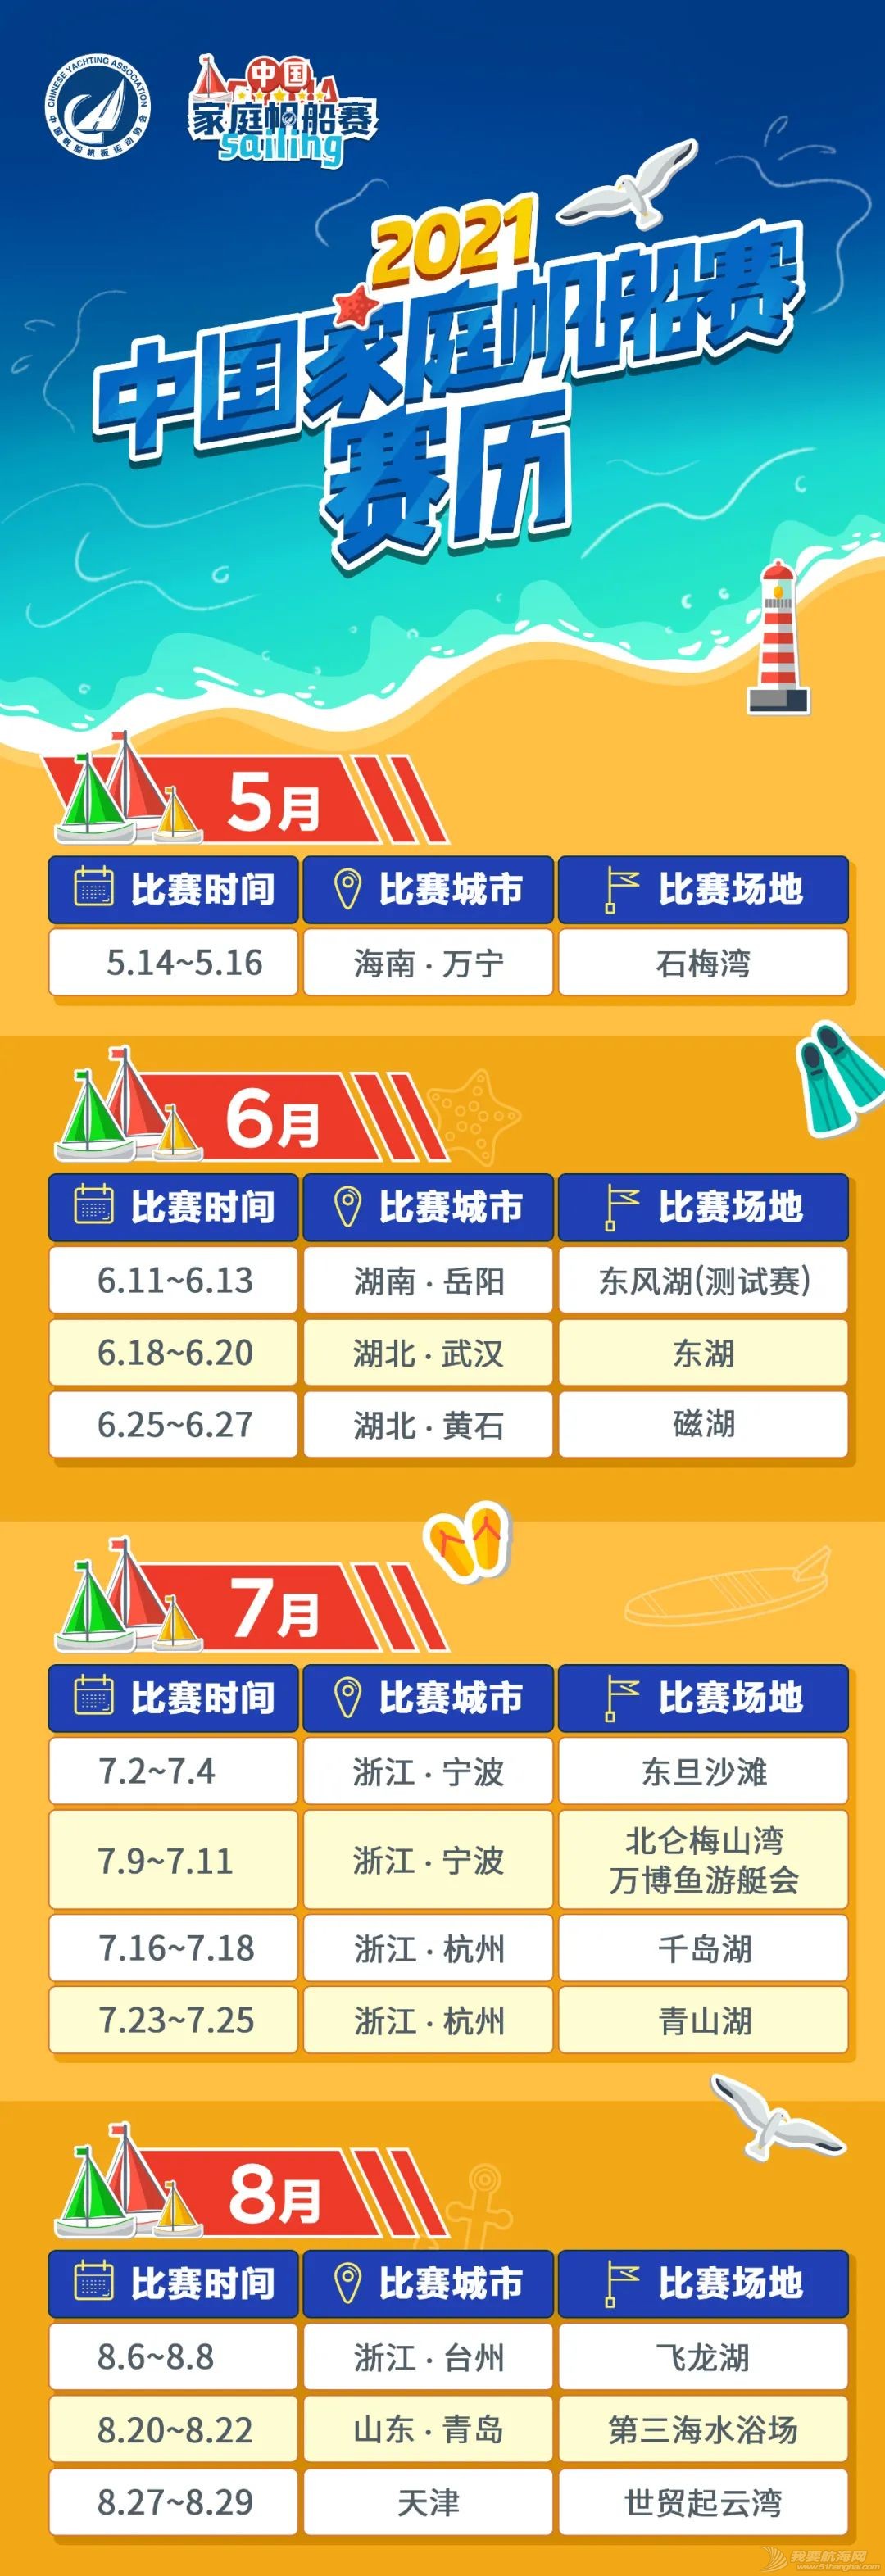 18座城市22站比赛 2021中国家庭帆船赛赛历公布w1.jpg